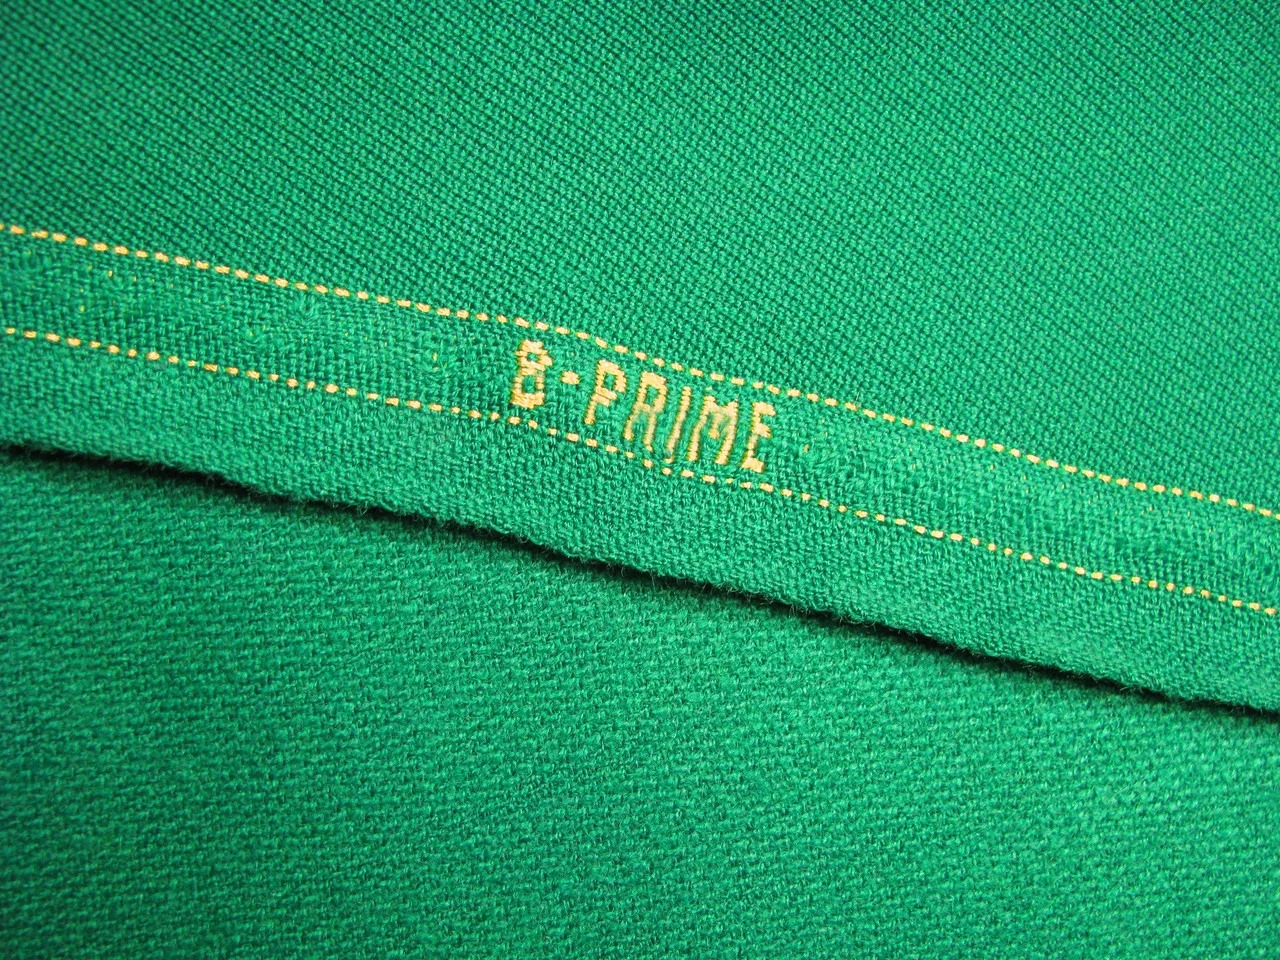 Отрез бильярдного сукна на стол 9 футов (3.5х1.95м) B-Prime 70/30 Yellow Green